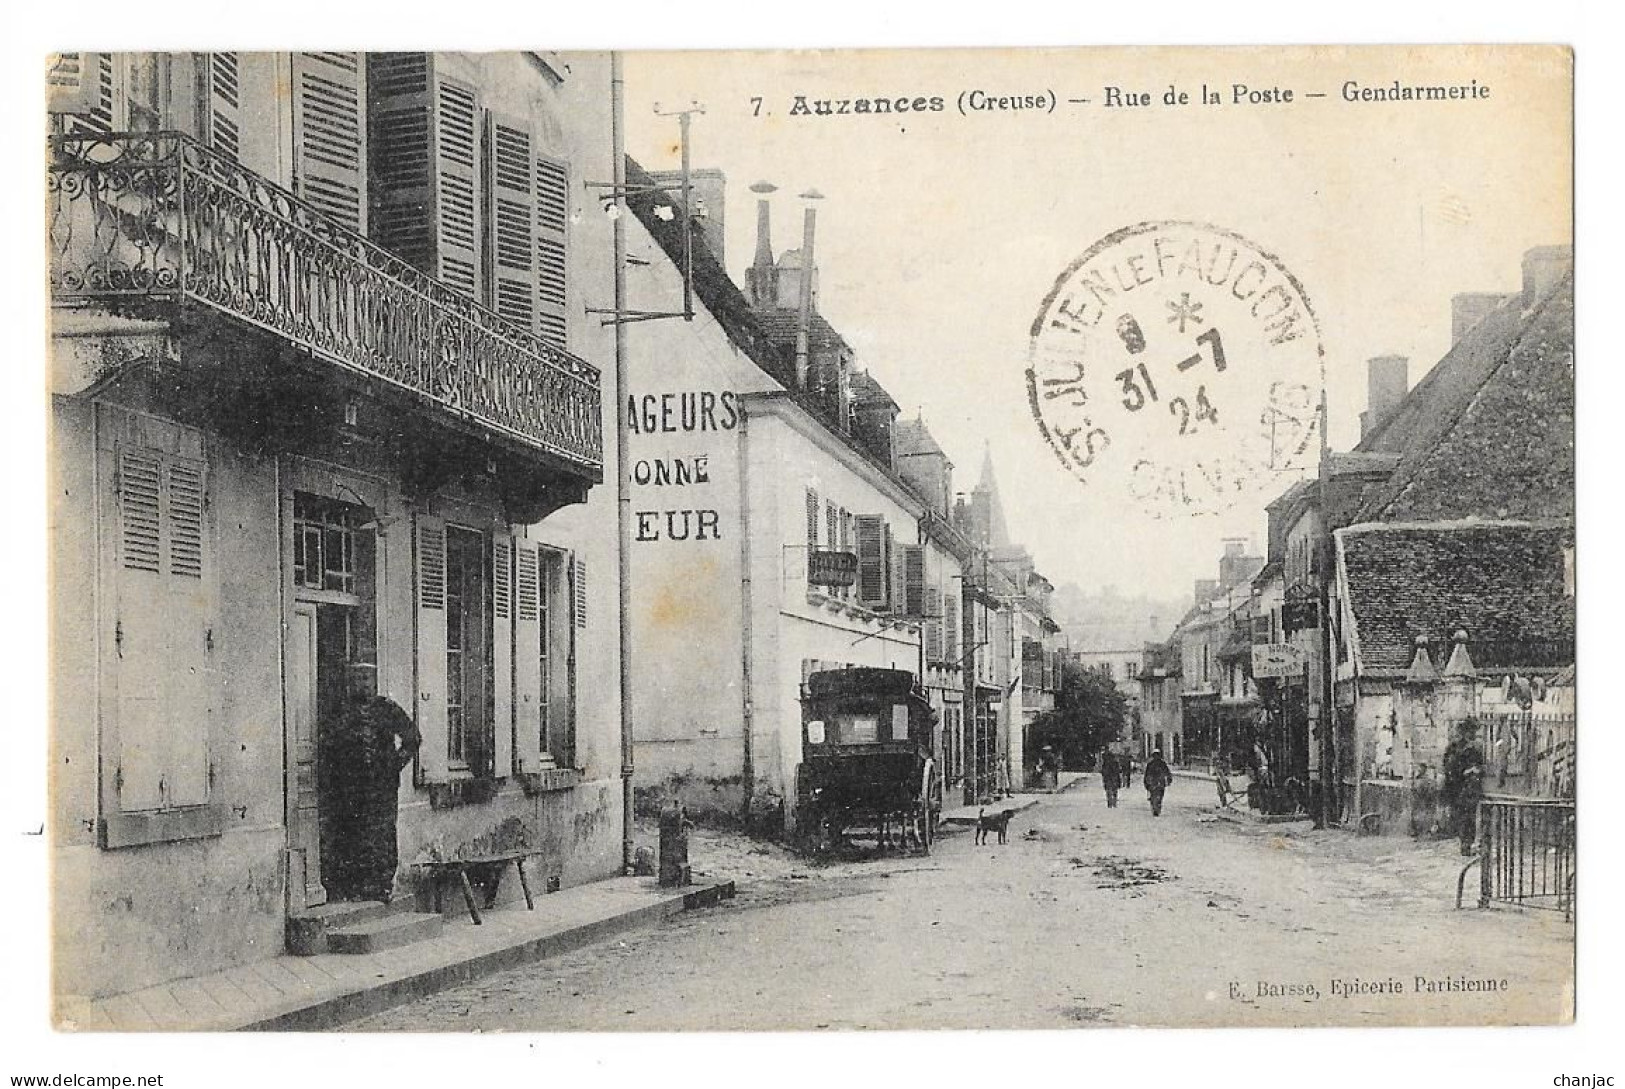 Cpa: 23 AUZANCES (ar. Aubusson) Rue De La Poste - Gendarmerie (animée) 1924  Ed. E. Barsse, Epicerie Parisienne N° 7 - Auzances